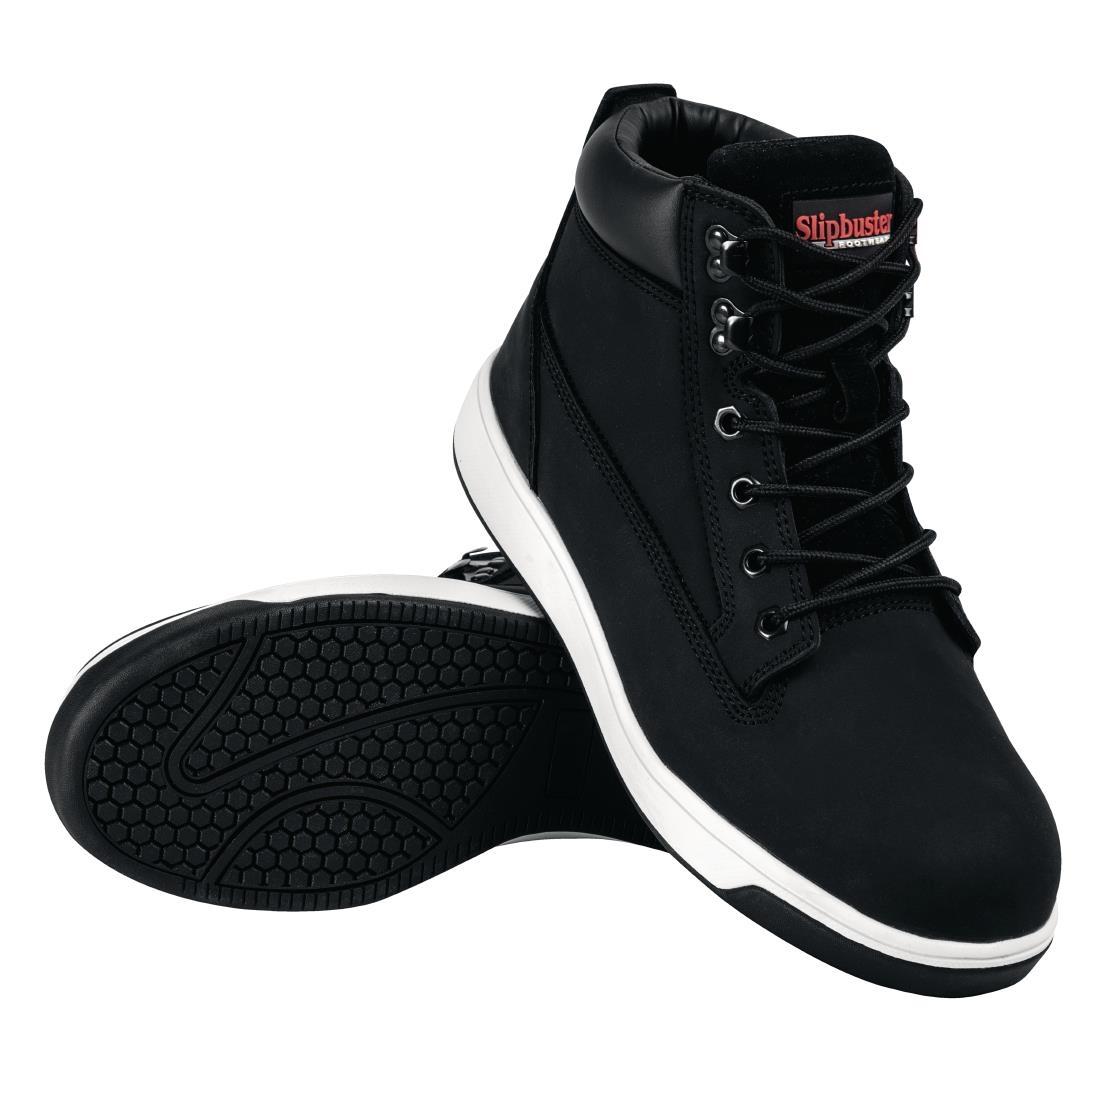 Slipbuster Sneaker Boots Black 45 - BB422-45  - 8